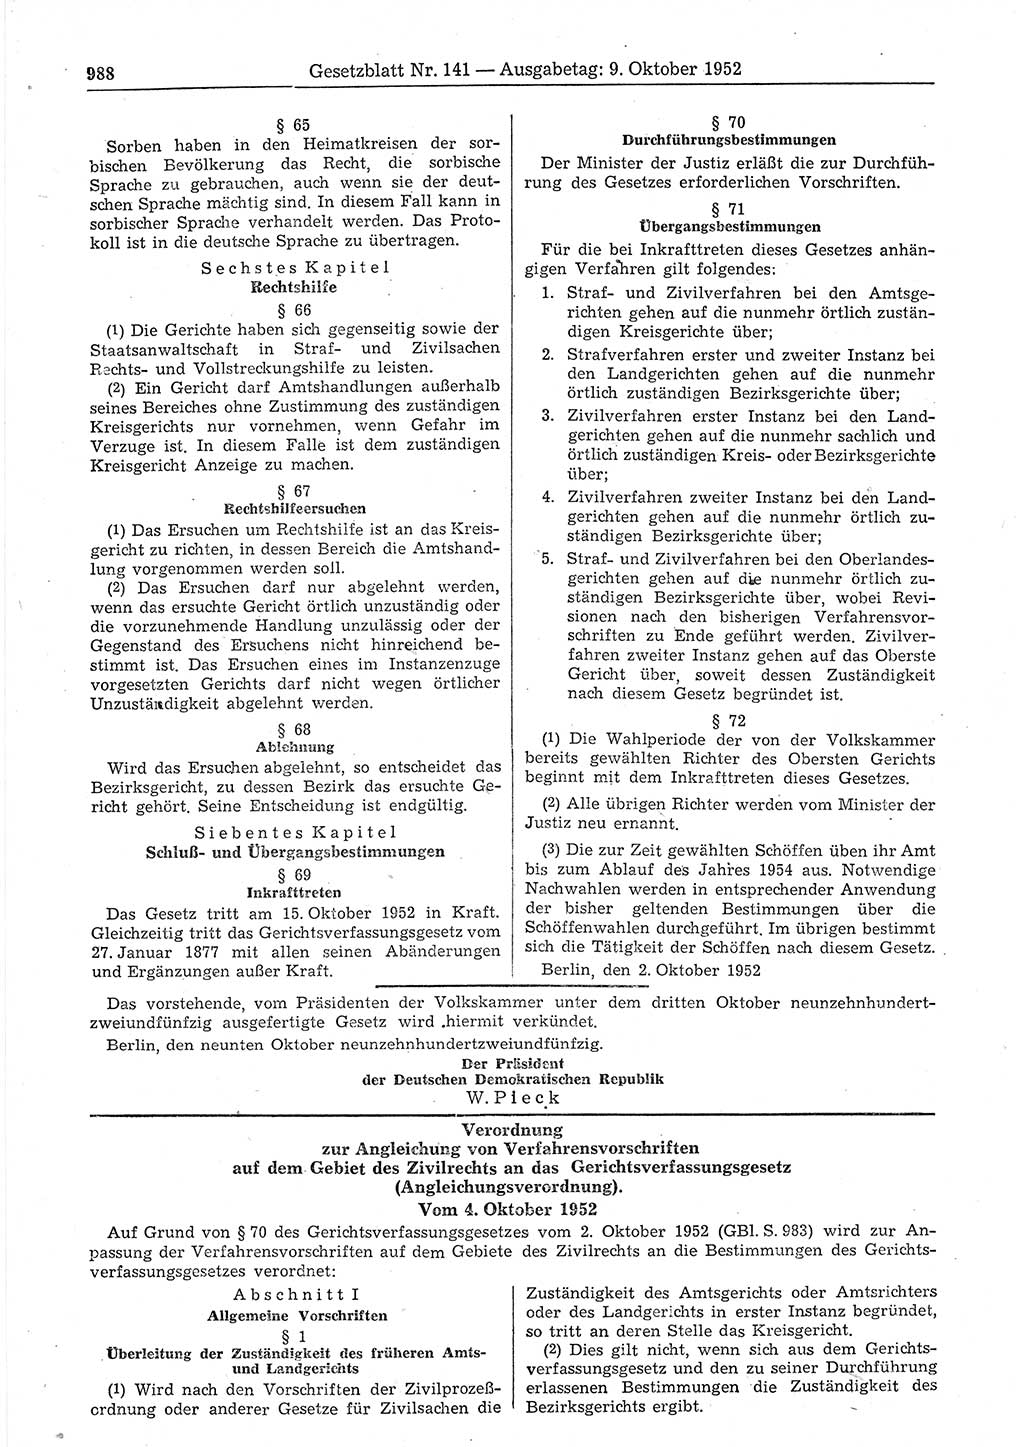 Gesetzblatt (GBl.) der Deutschen Demokratischen Republik (DDR) 1952, Seite 988 (GBl. DDR 1952, S. 988)